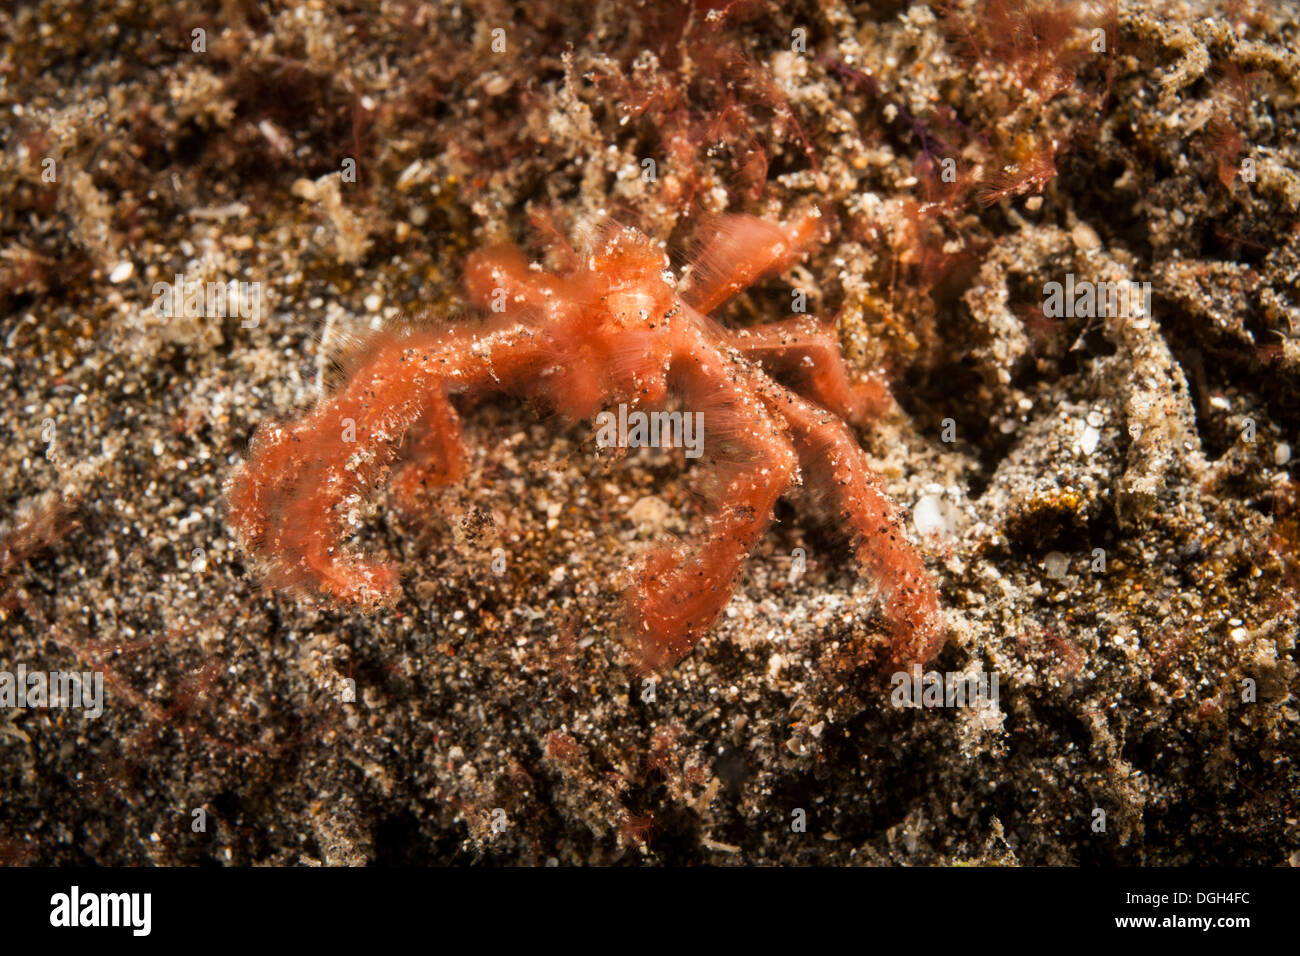 Orang Utan Krabbe (Oncinopus SP.) in Gefahr-Anzeige in der Lembeh-Strait aus Nord-Sulawesi, Indonesien. Stockfoto